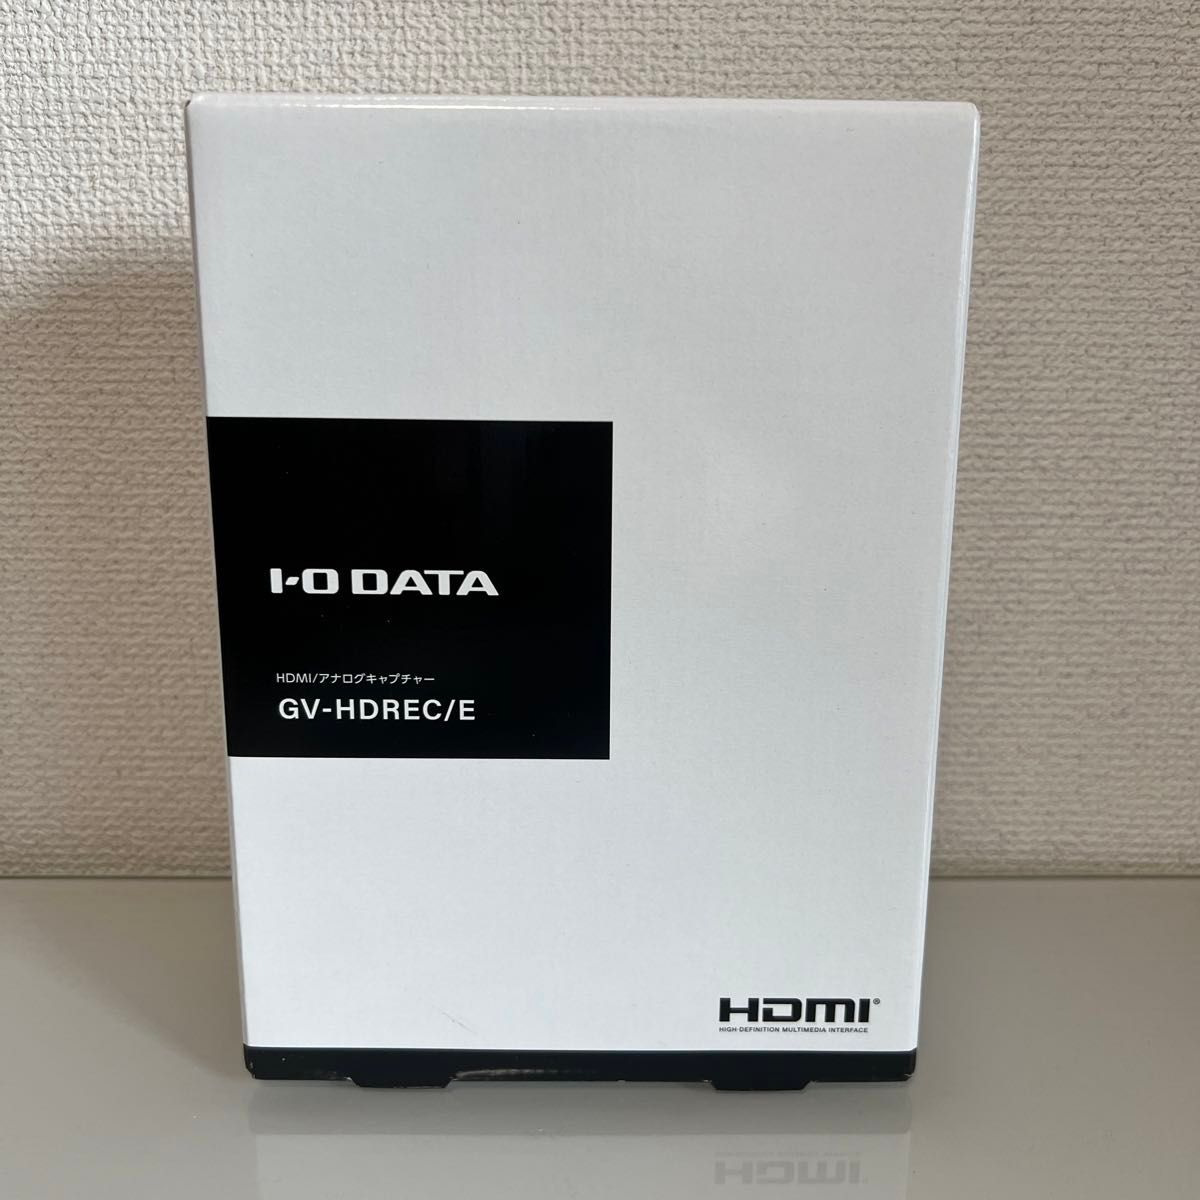 【未使用】GV-HDREC/E  アナログキャプチャー HDMI IOデータ